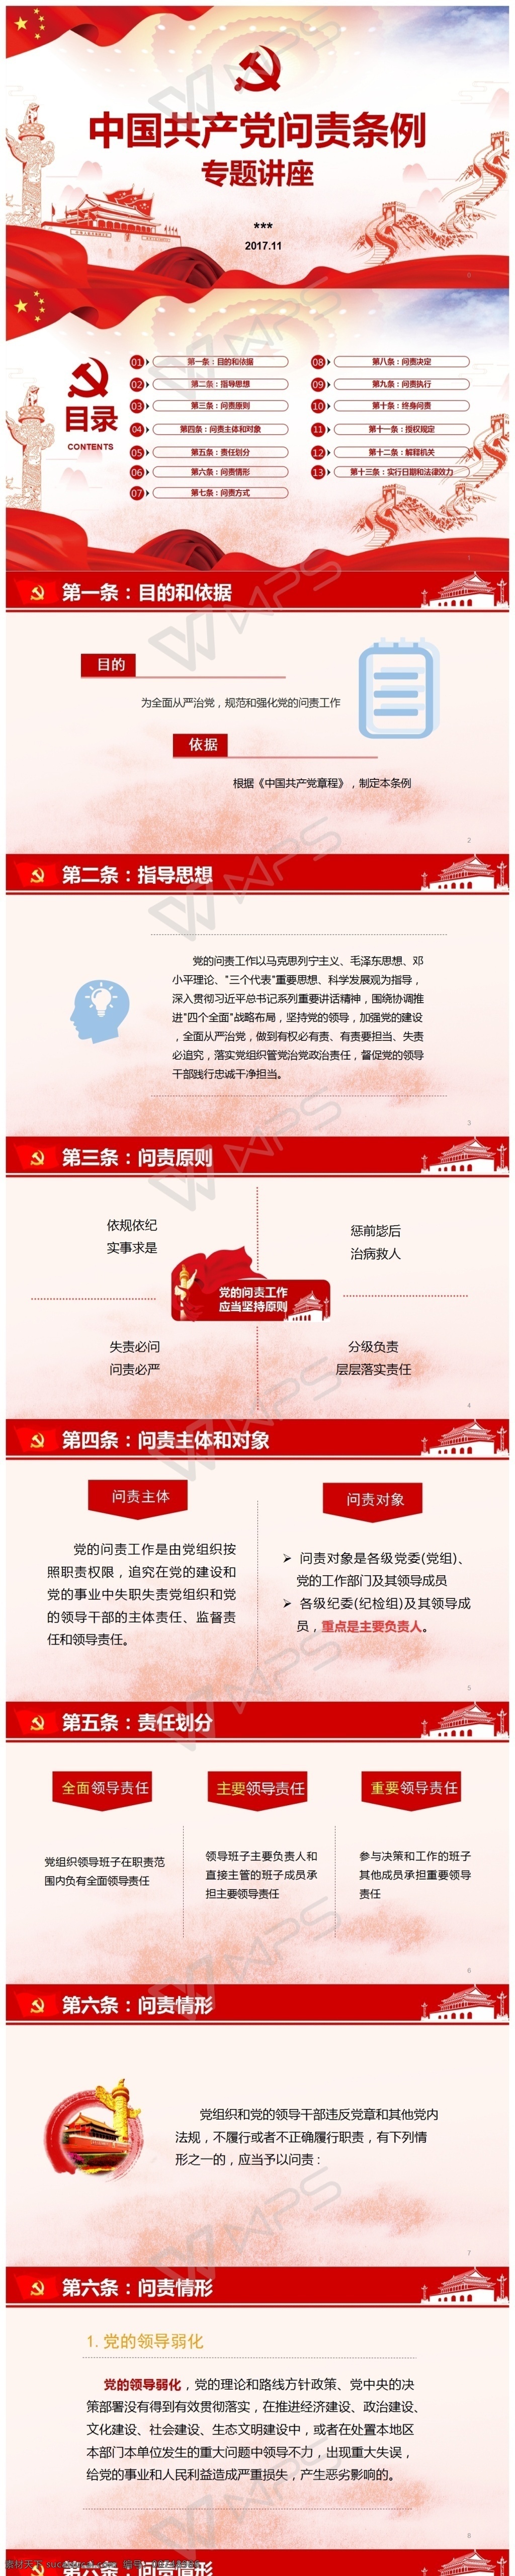 党建 红色 讲座 问责条例 宣传 中国共产党 问 责 条例